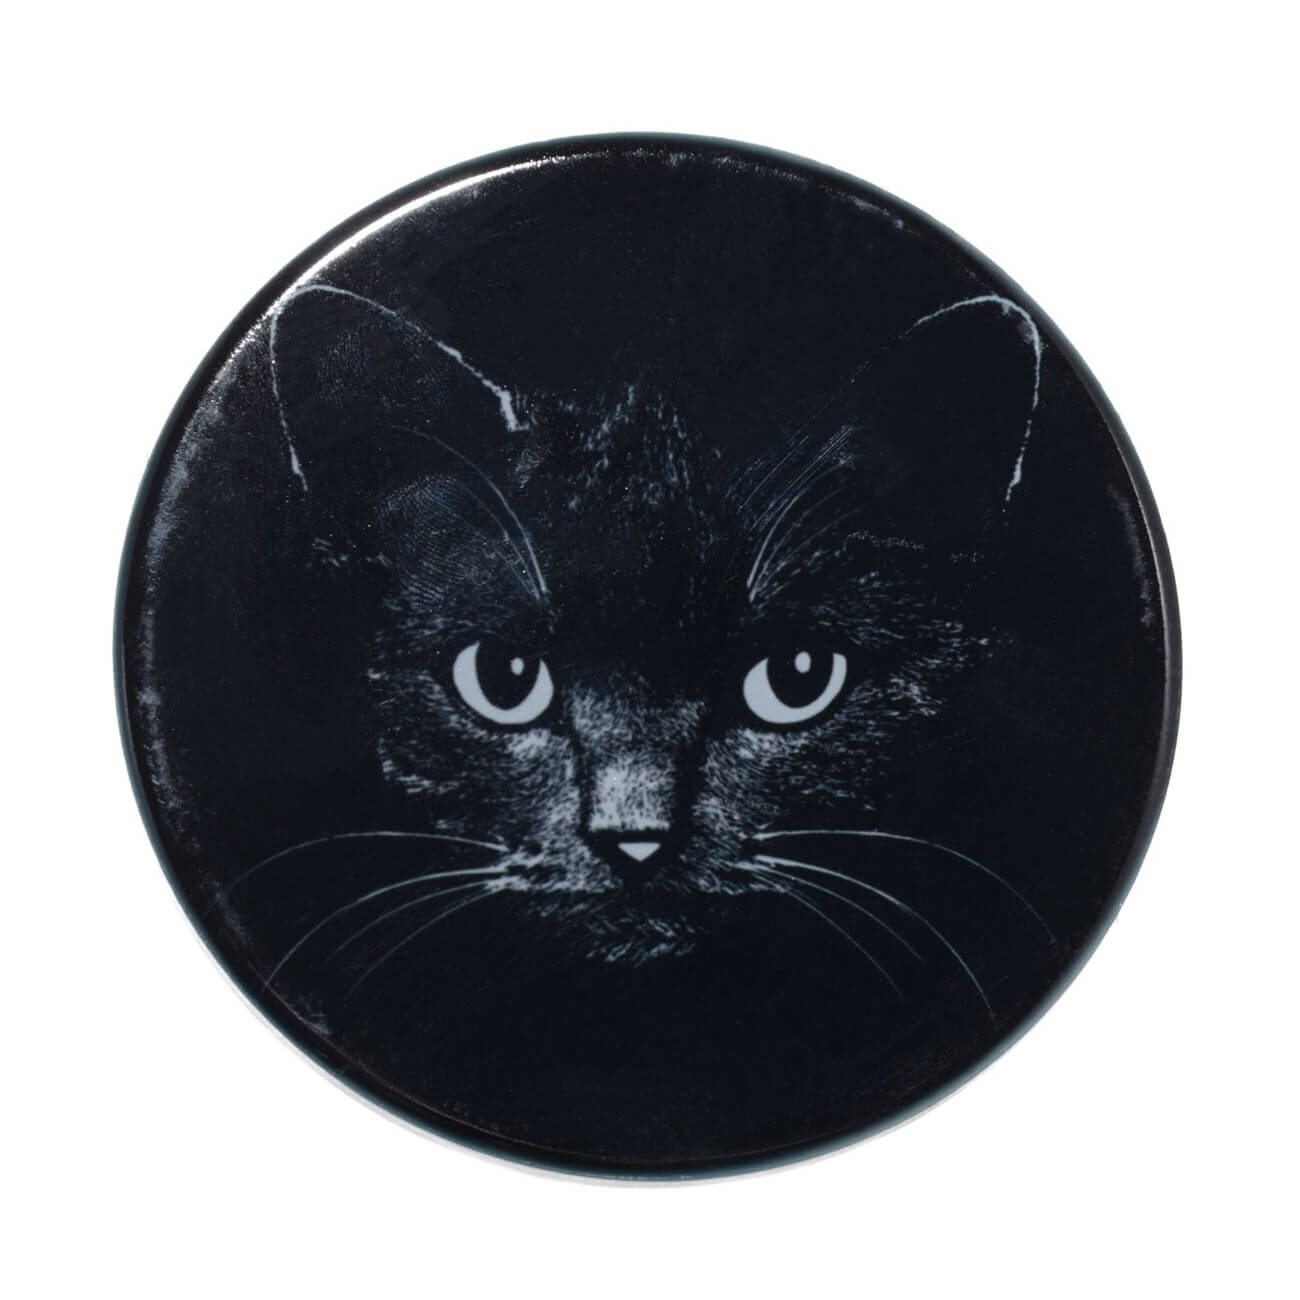 Подставка под кружку, 11x11 см, керамика/пробка, круглая, черная, Ночной кот, Cat night изображение № 1